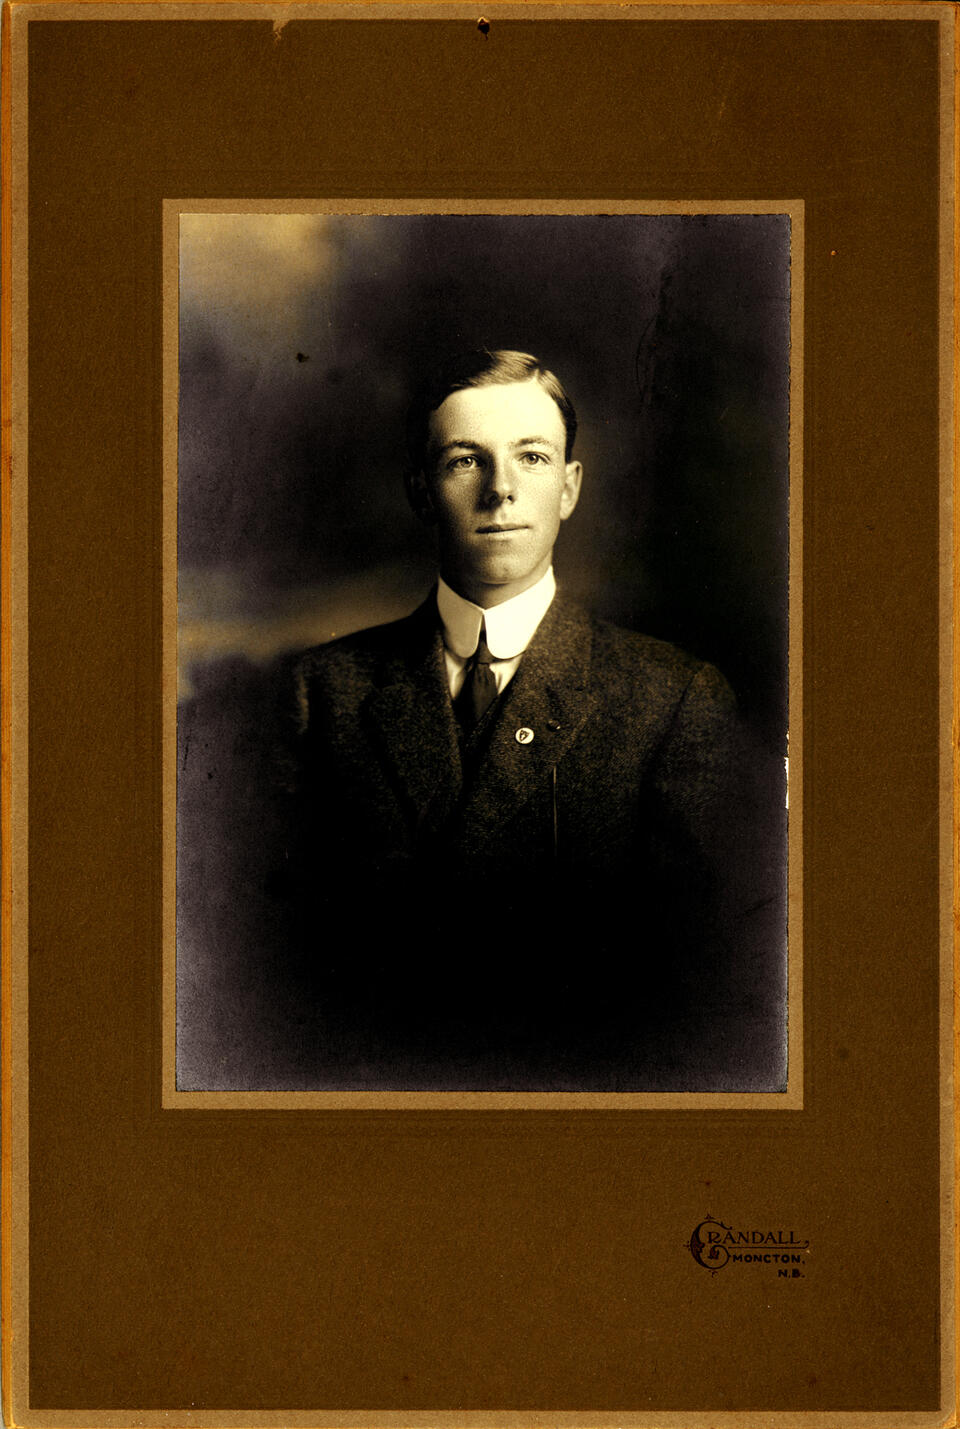 1915 Percy Robert Crandall